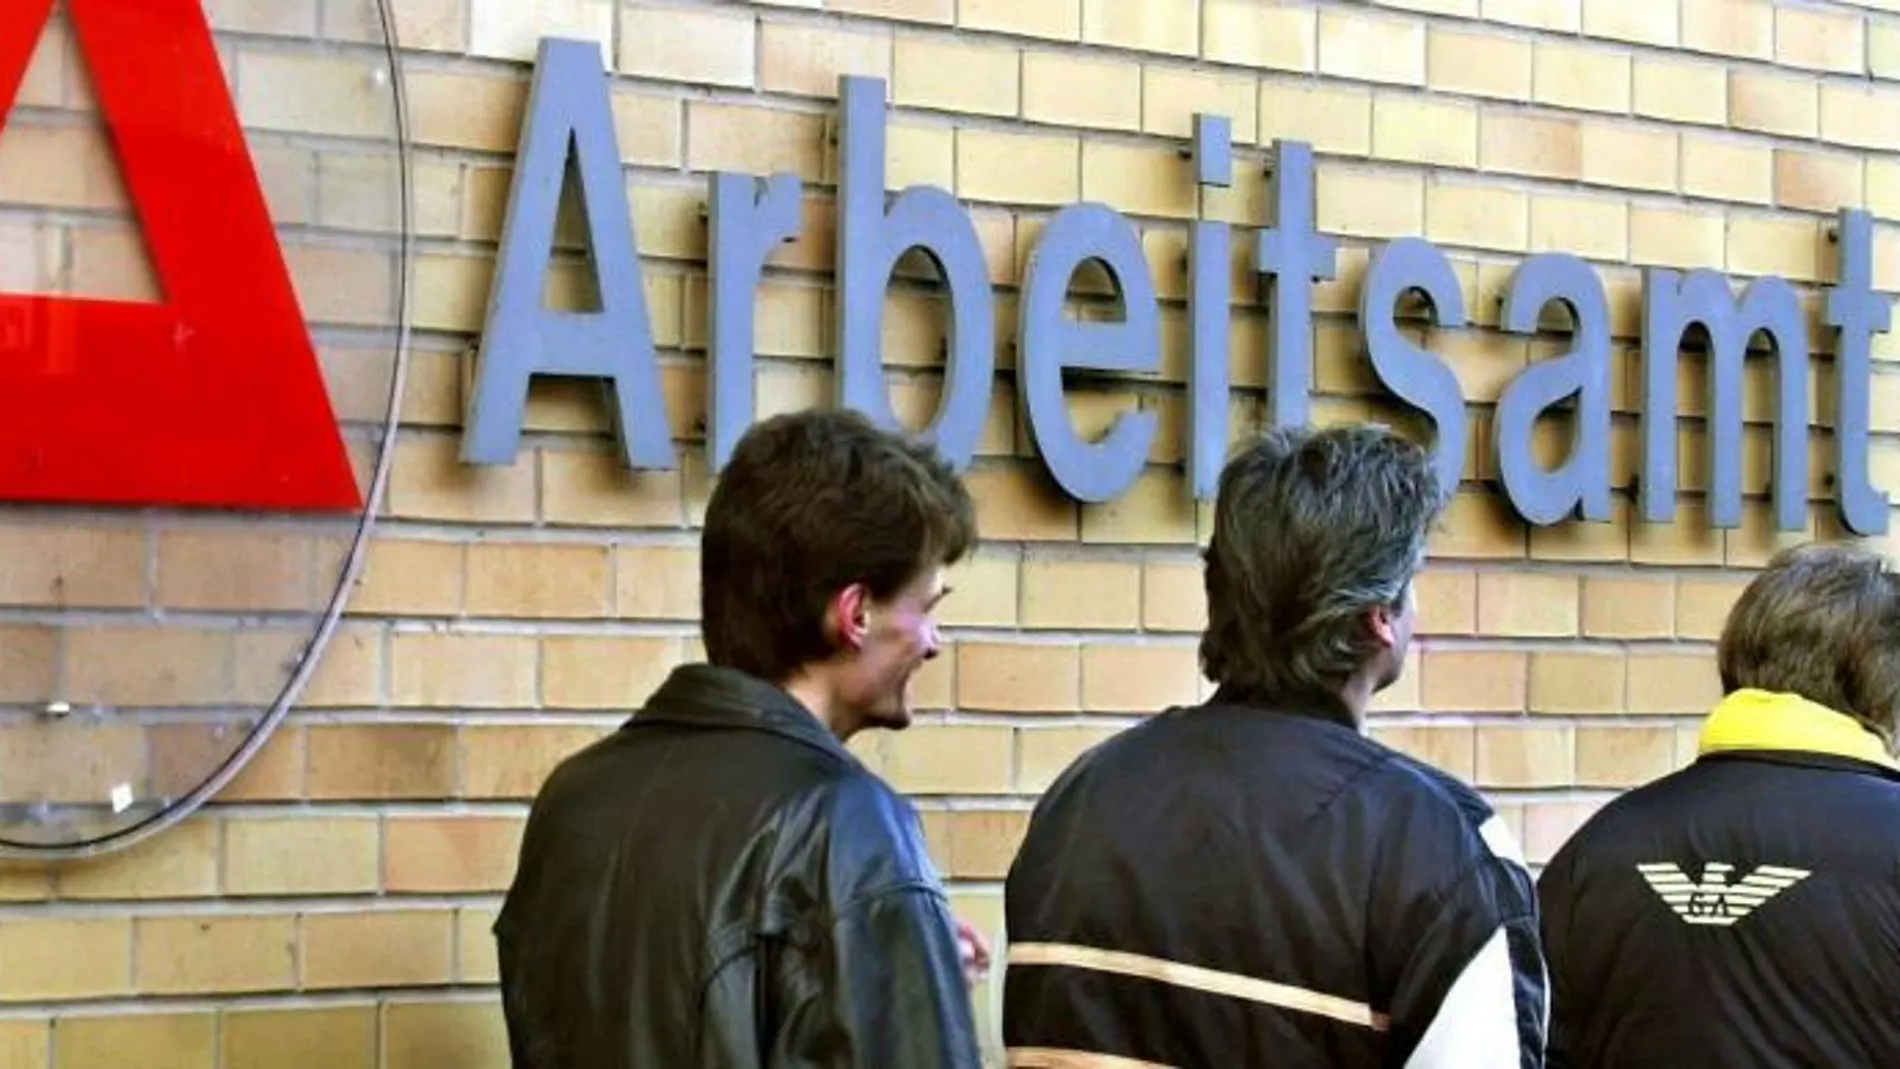 Tres hombres delante de la entrada de una oficina estatal de desempleo en Saarbruecken, Alemania.